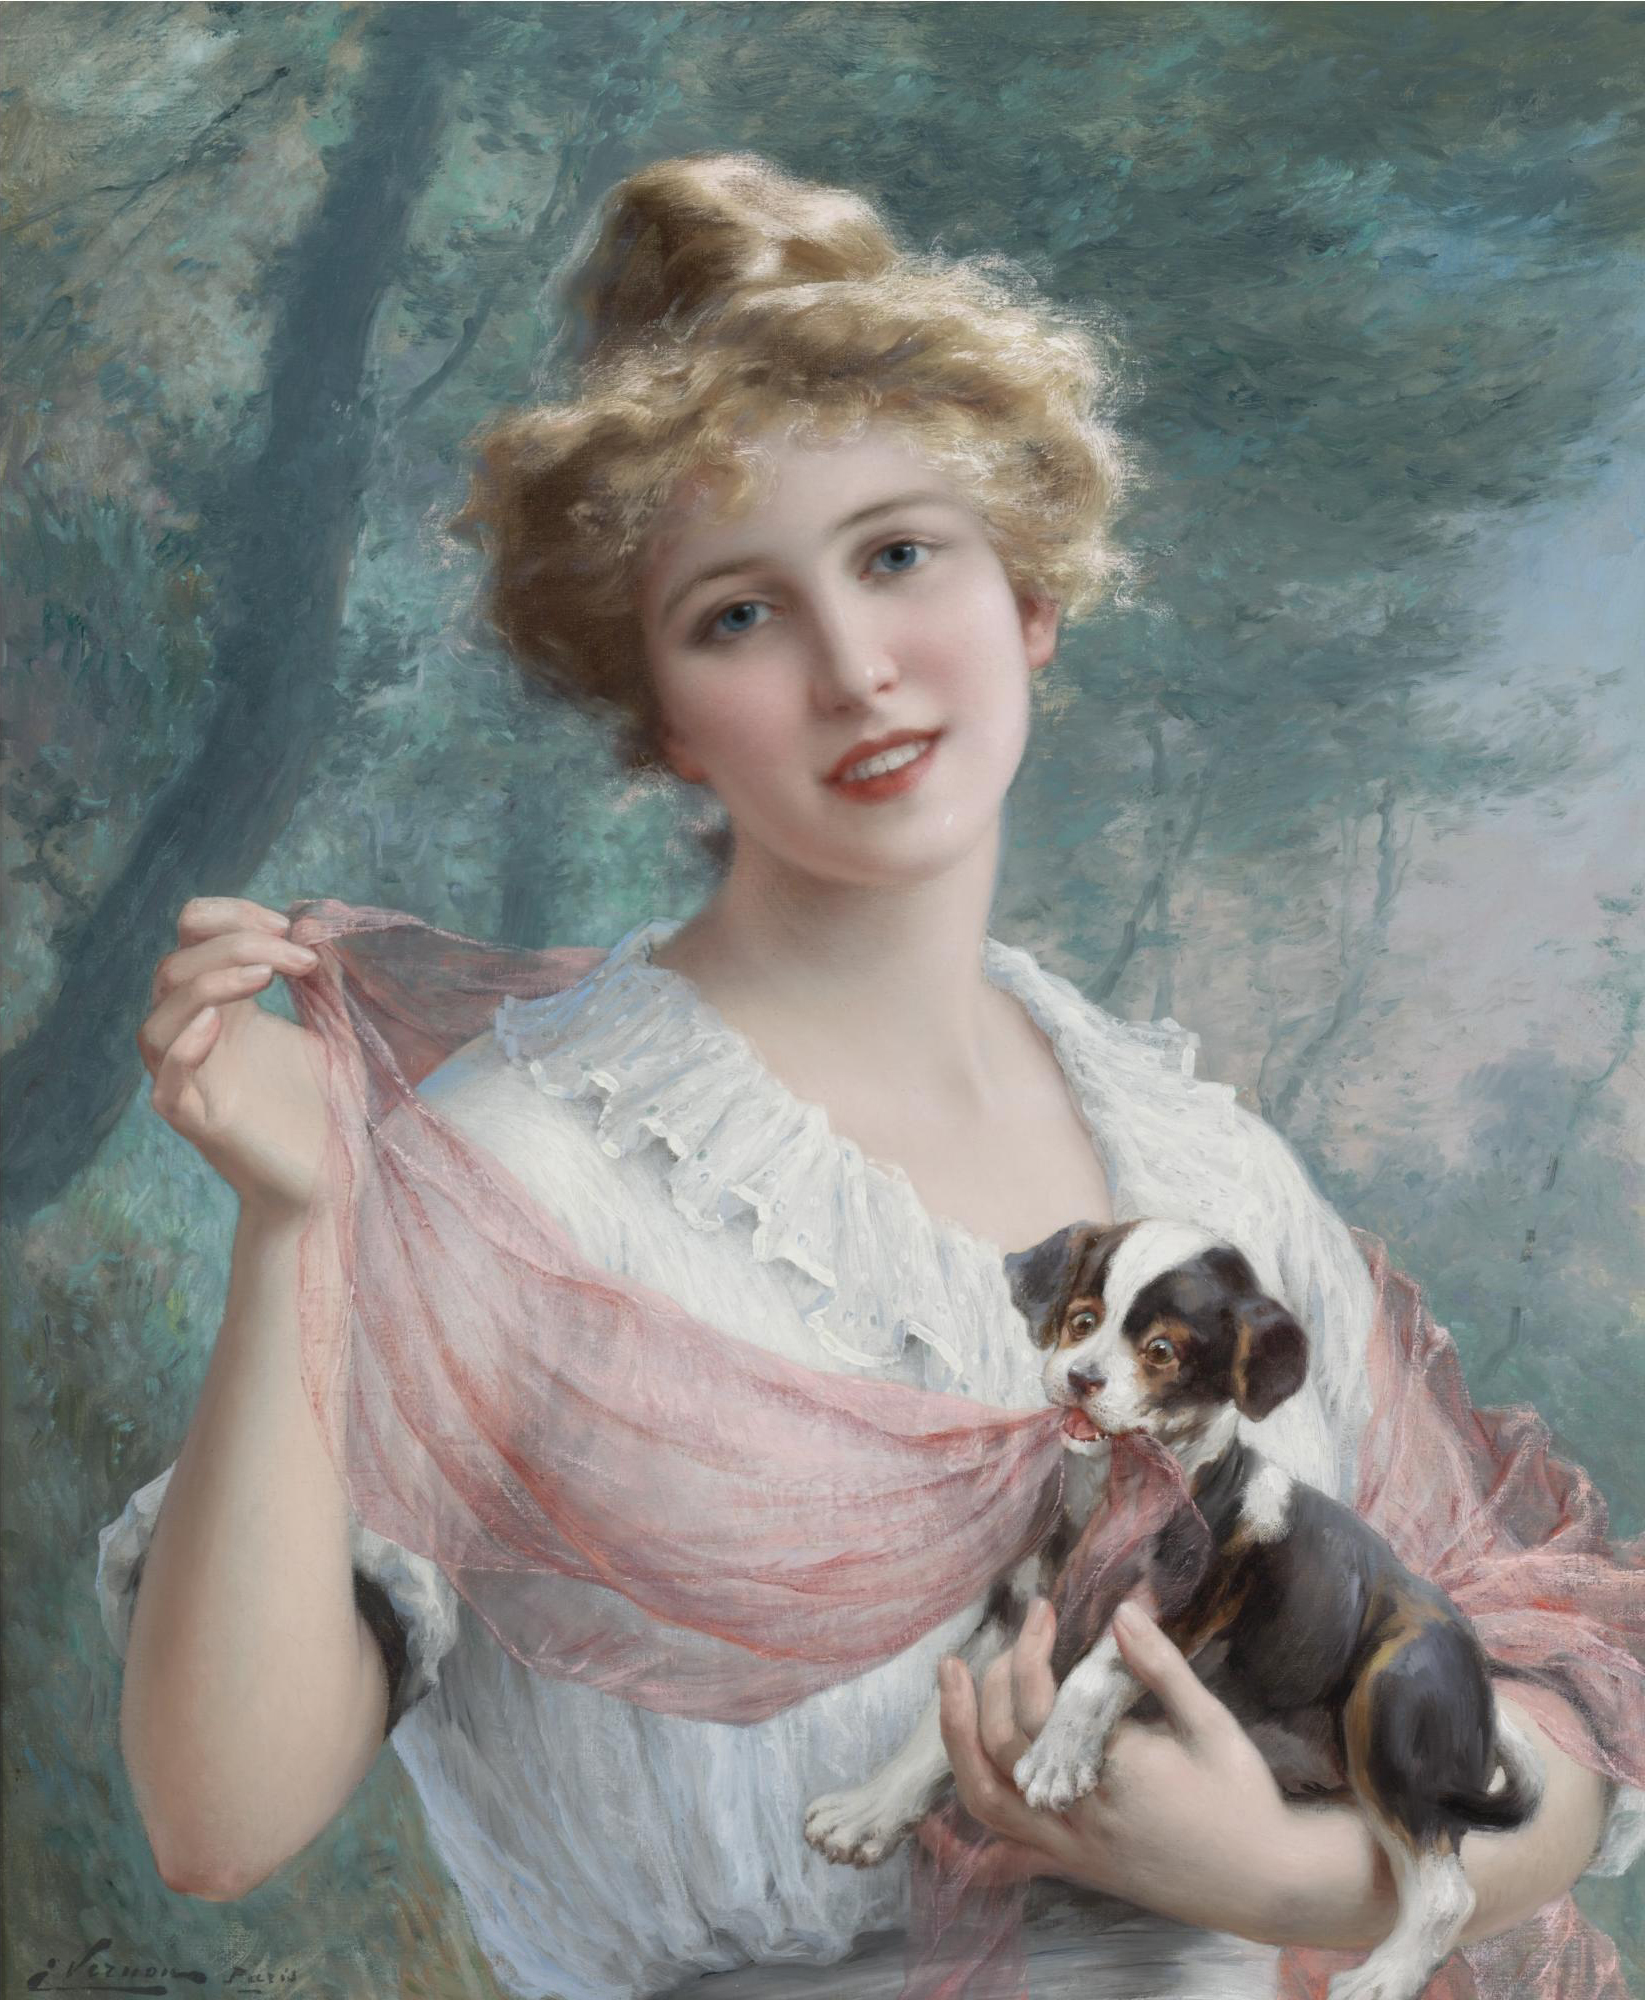 Знаменитые художники. Эмиль Вернон (1872-1919). Эмиль Вернон картины. Эмиль Вернон женские портреты. Эмиль Вернон — французский художник прекрасной эпохи (British, 1872-1919).